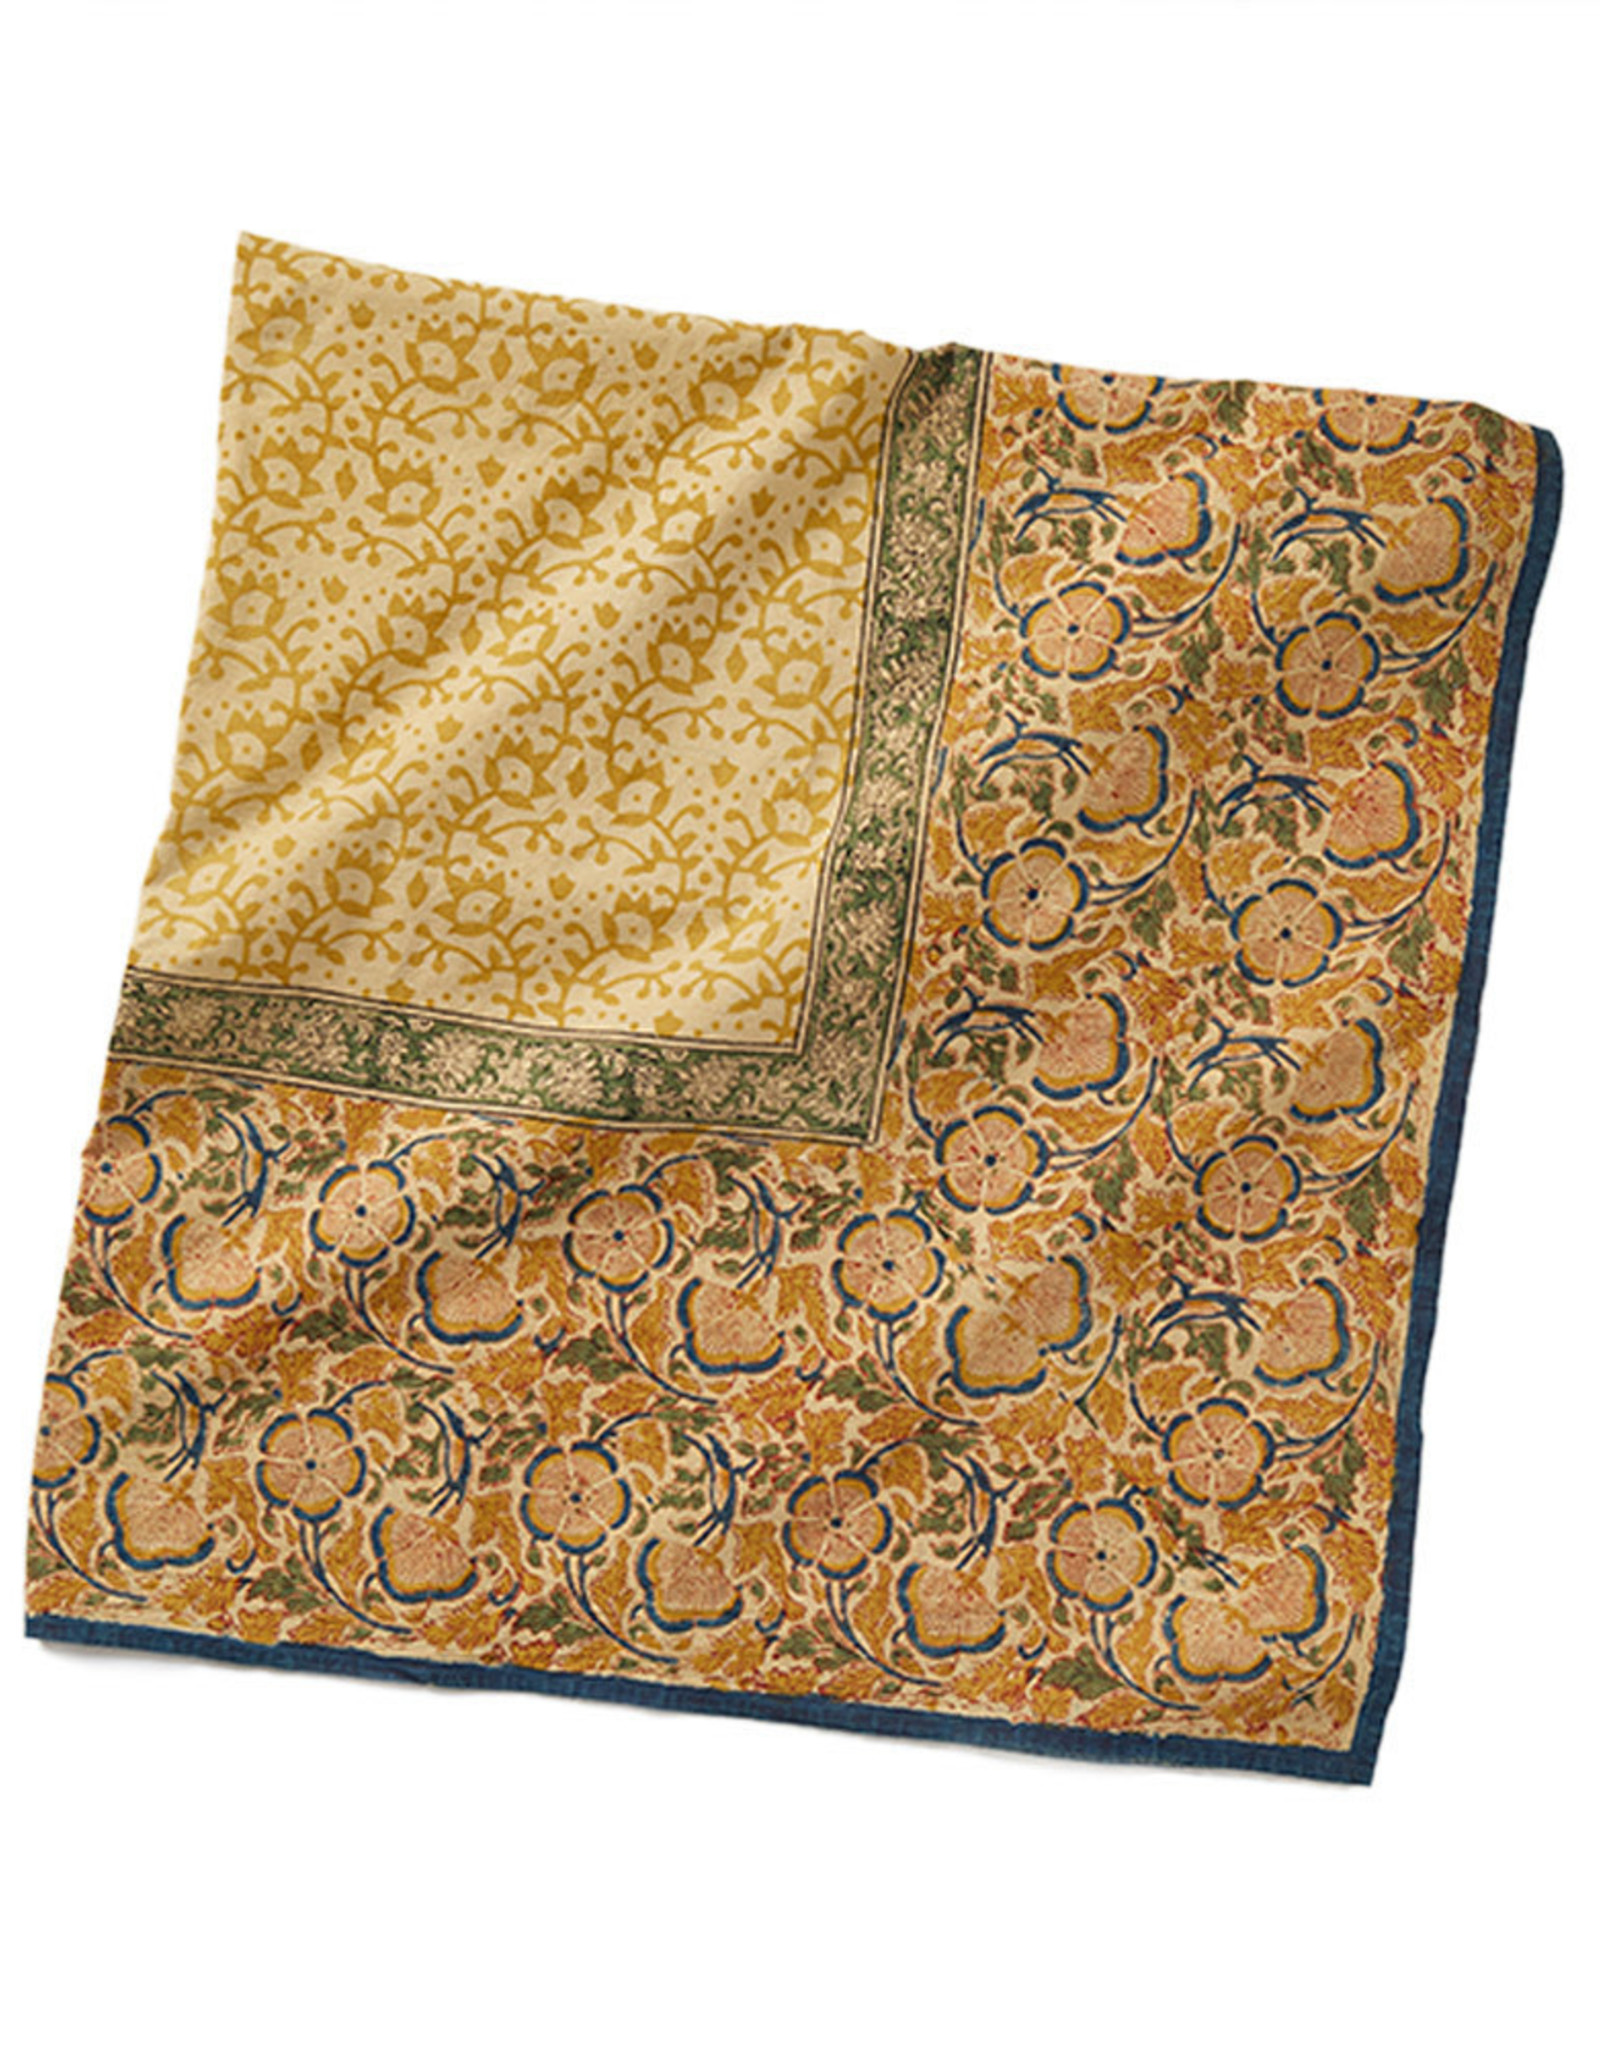 Serrv Kalamkari Meadow Tablecloth 120"x70"